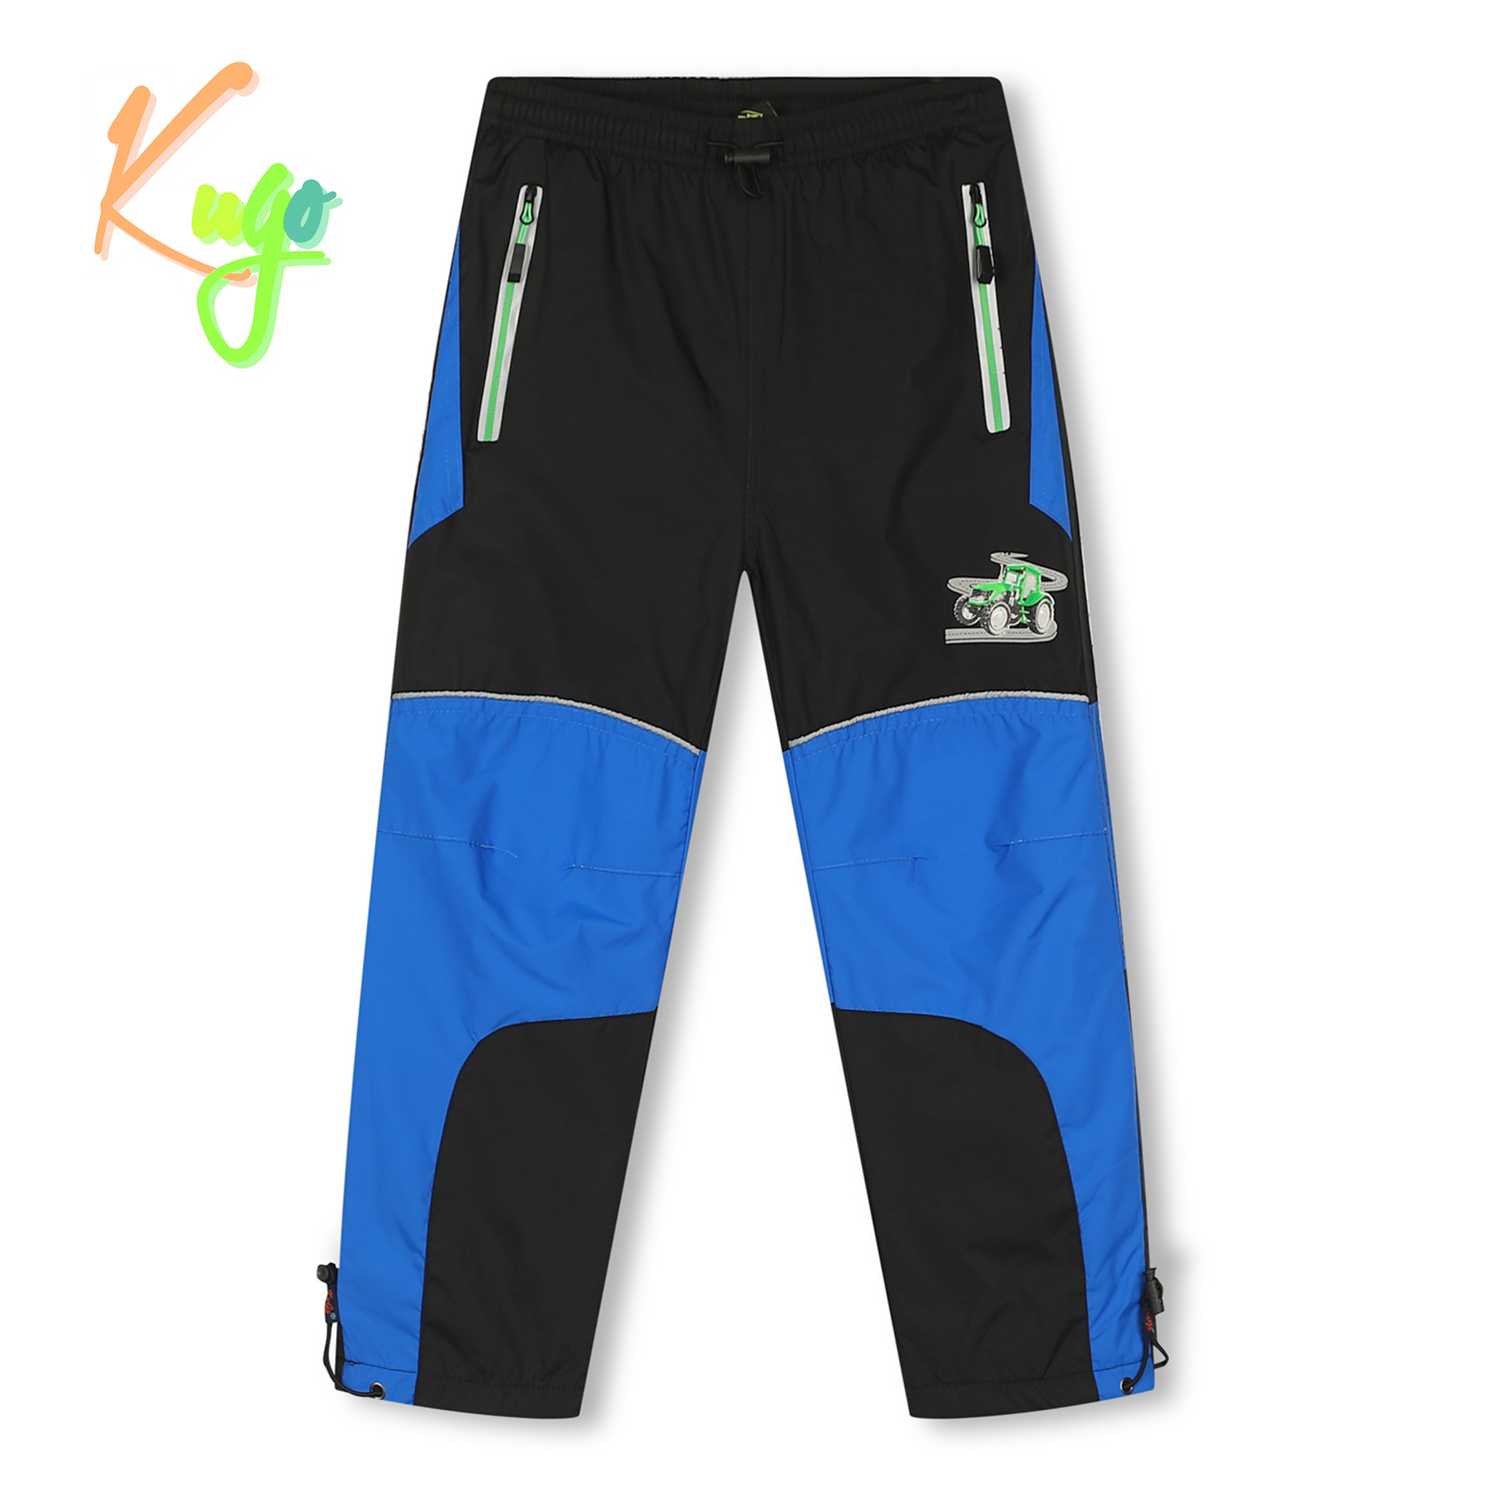 Chlapecké šusťákové kalhoty, zateplené - KUGO DK7126, černá/ zelený zip Barva: Černá, Velikost: 110